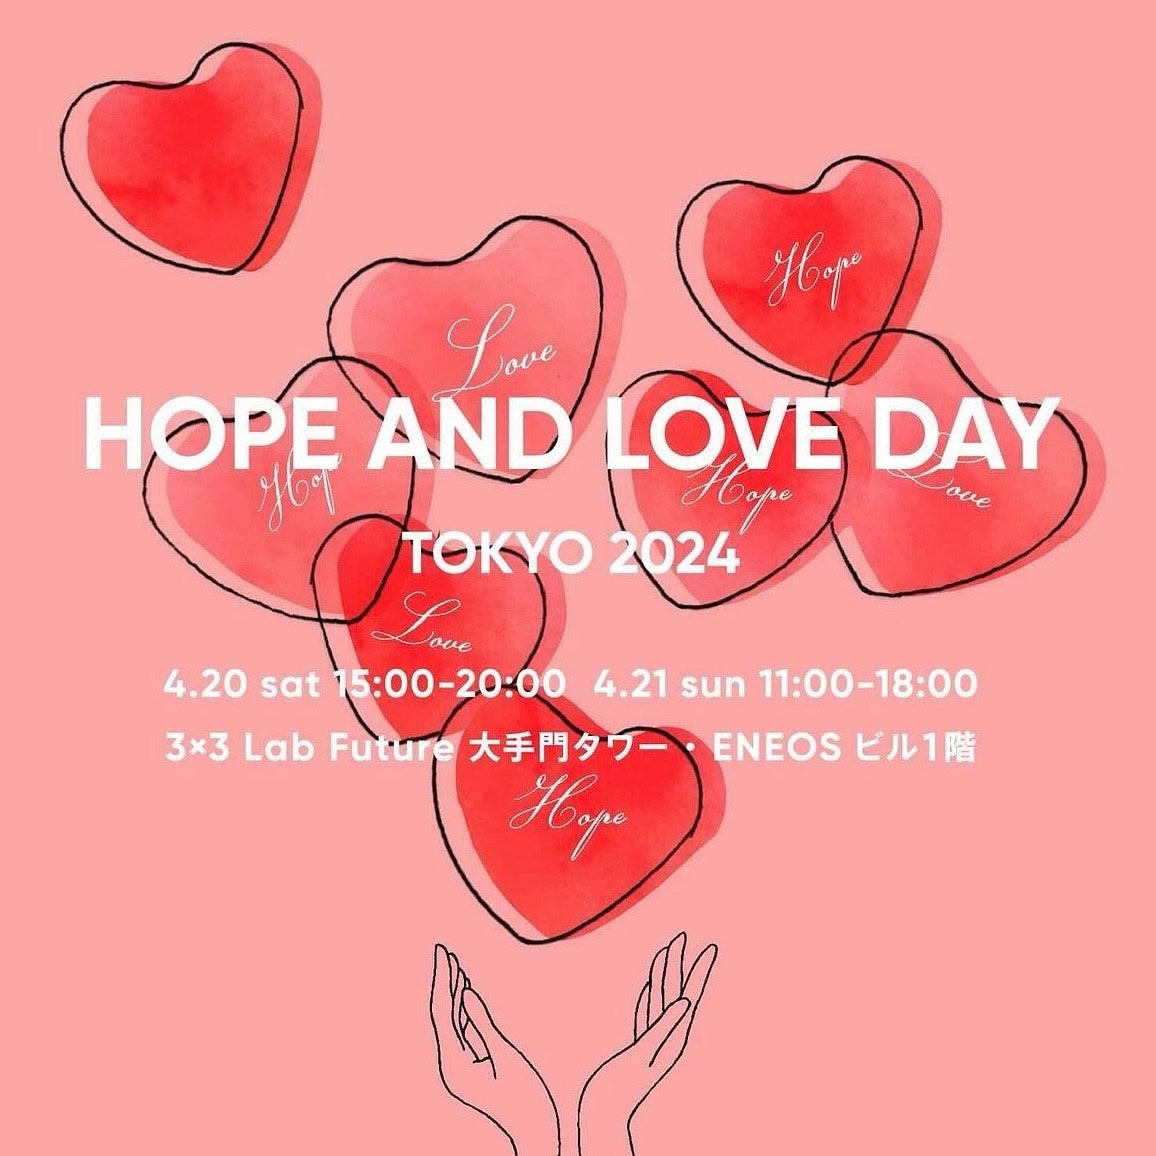 4月20日(土)21日(日)開催のパリ仕込みのチャリティーイベント「HOPE AND LOVE DAY」にukaが参加